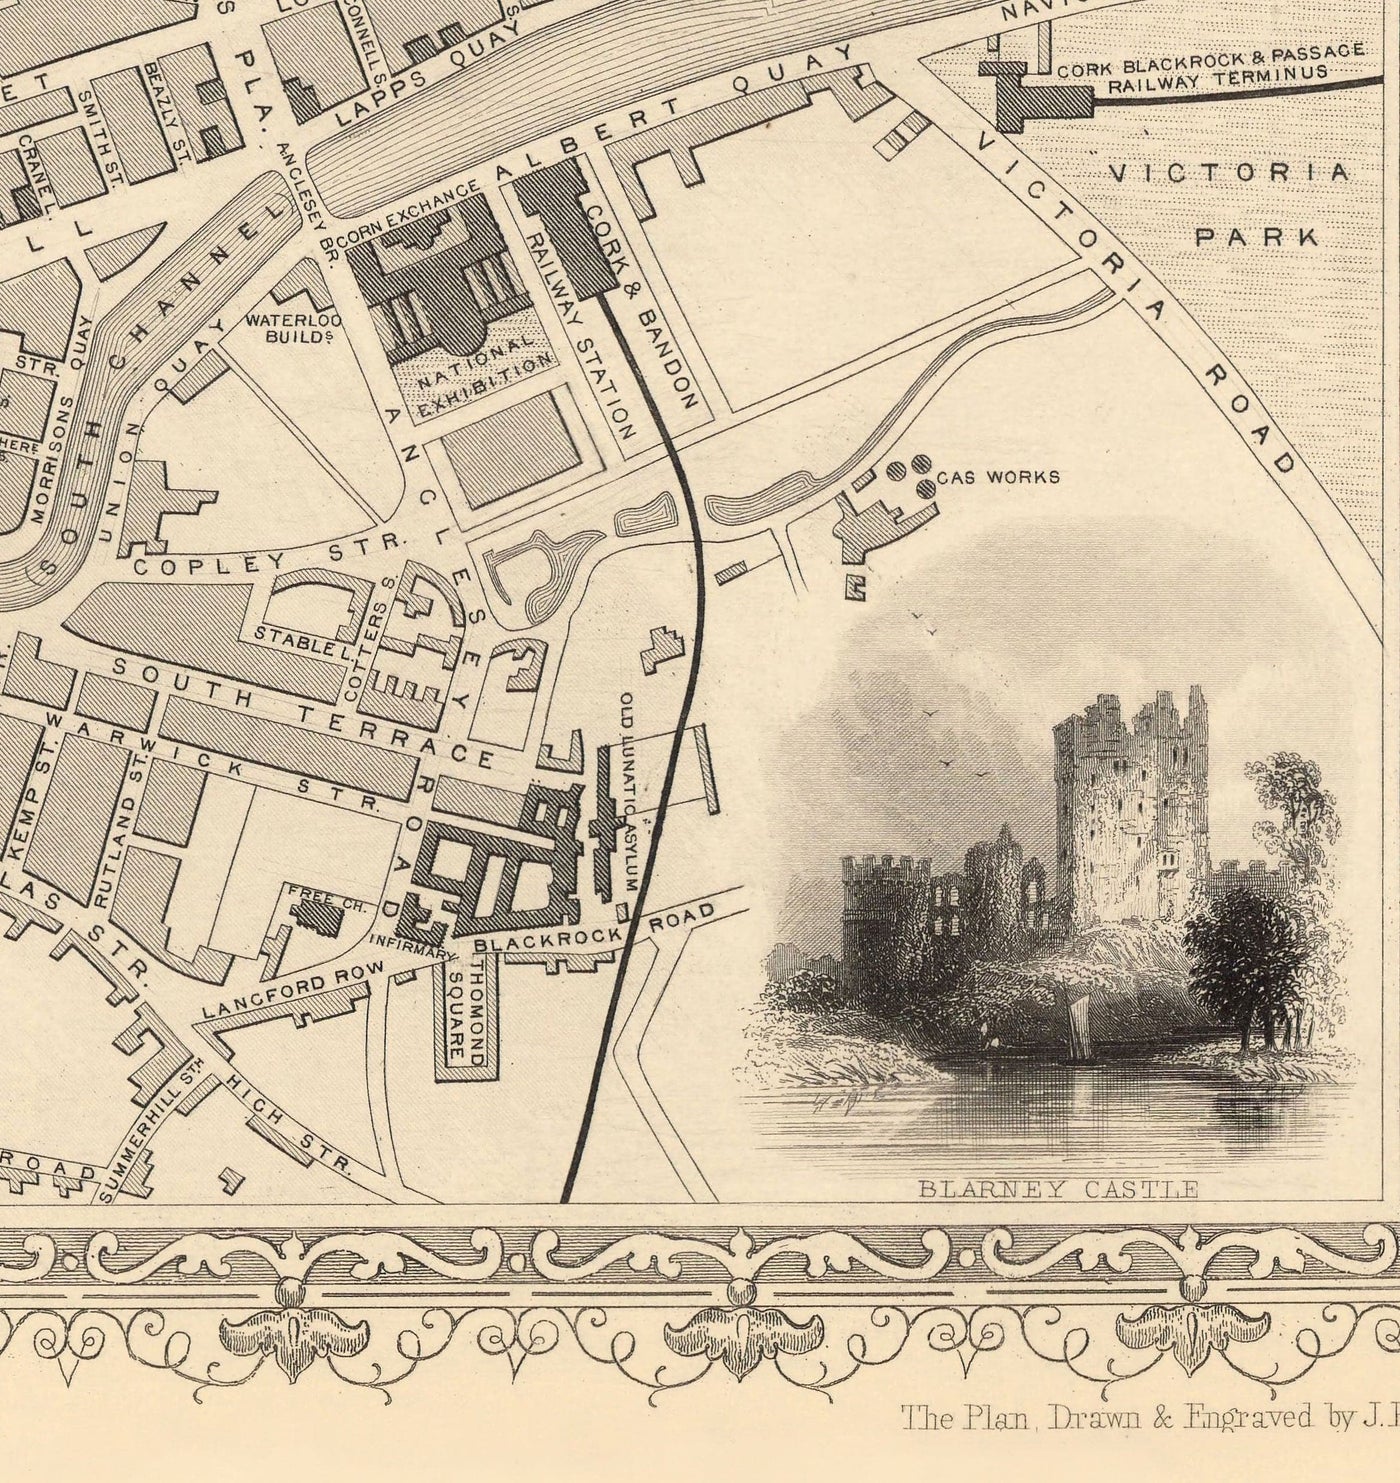 Ancienne carte de Cork, Irlande, 1851 par Tallis & Rapkin - Victorian Quartier, Central, Popes Quay, River Lee, Munster